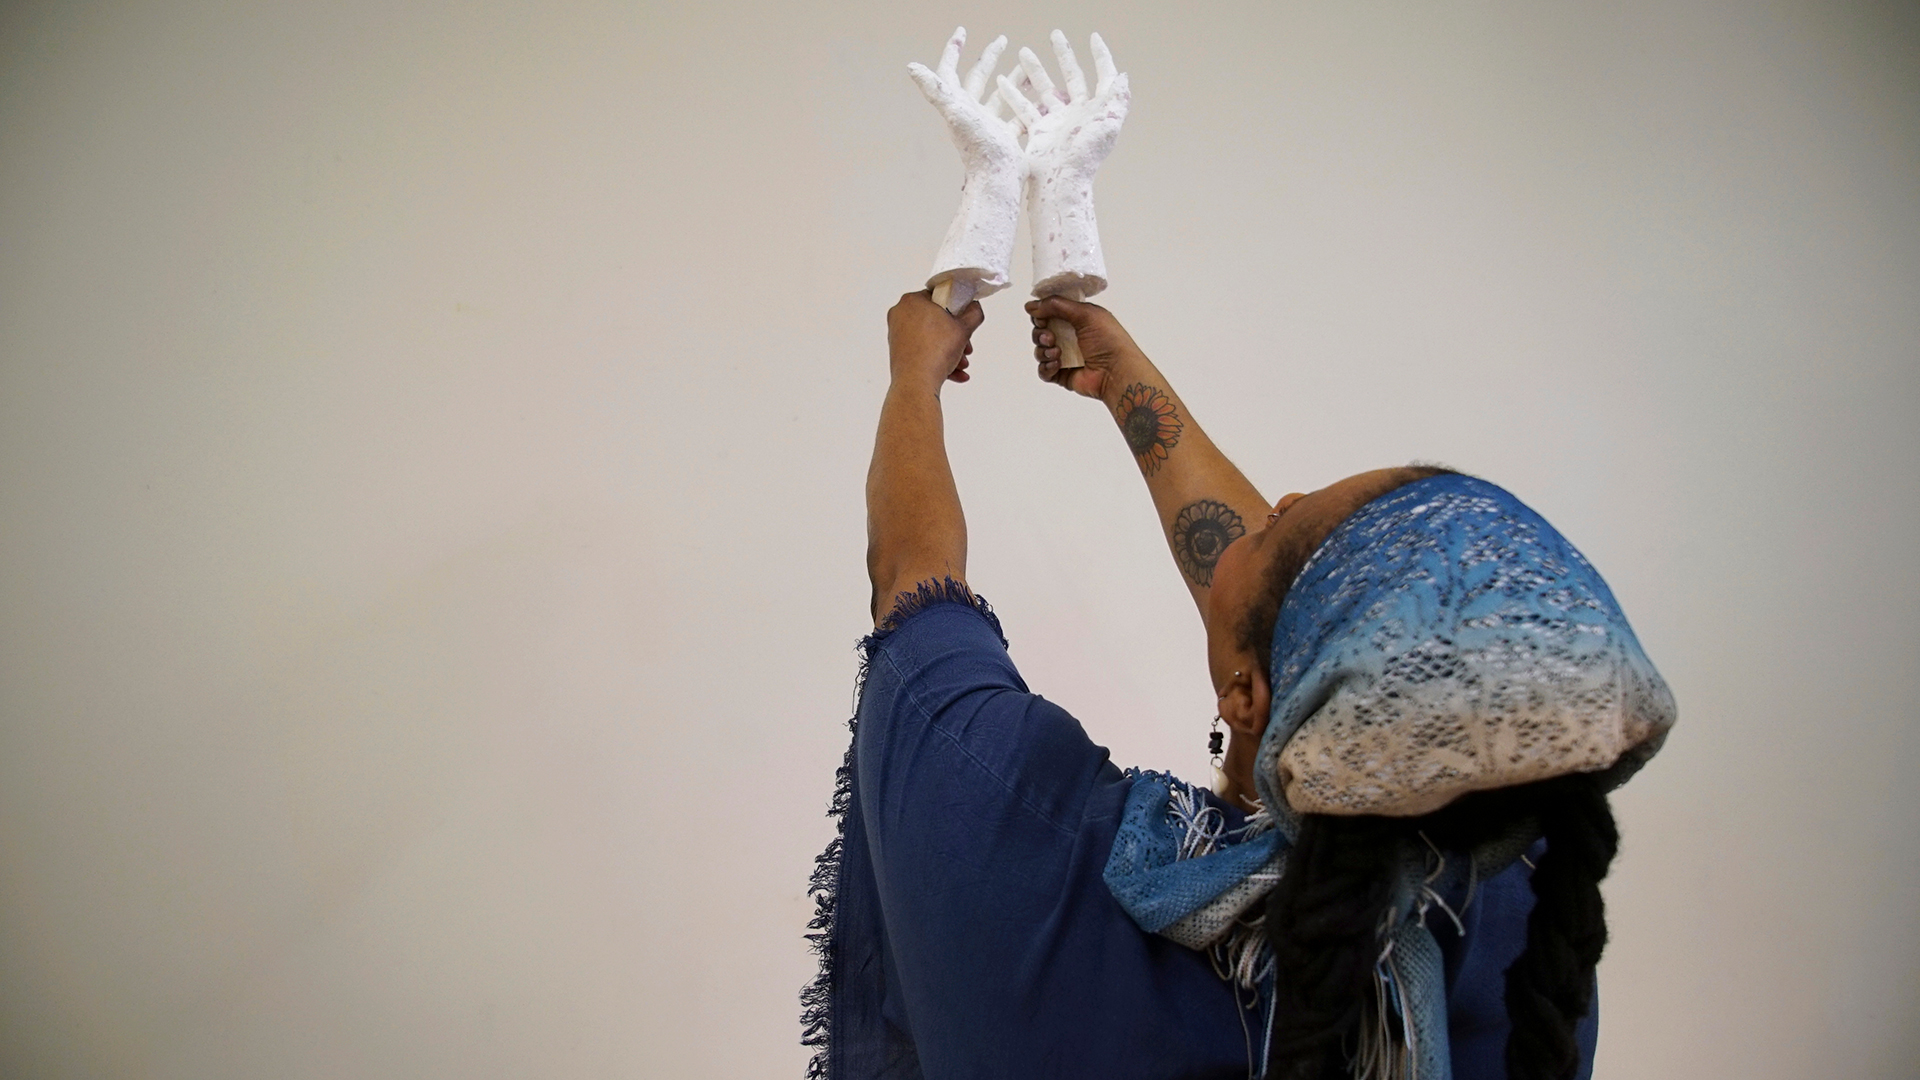 Crystal Kornickey sostiene moldes de sus manos en un estudio en el Museo de Arte Gibbes en Charleston, Carolina del Sur (Foto AP/Allen G. Breed)

